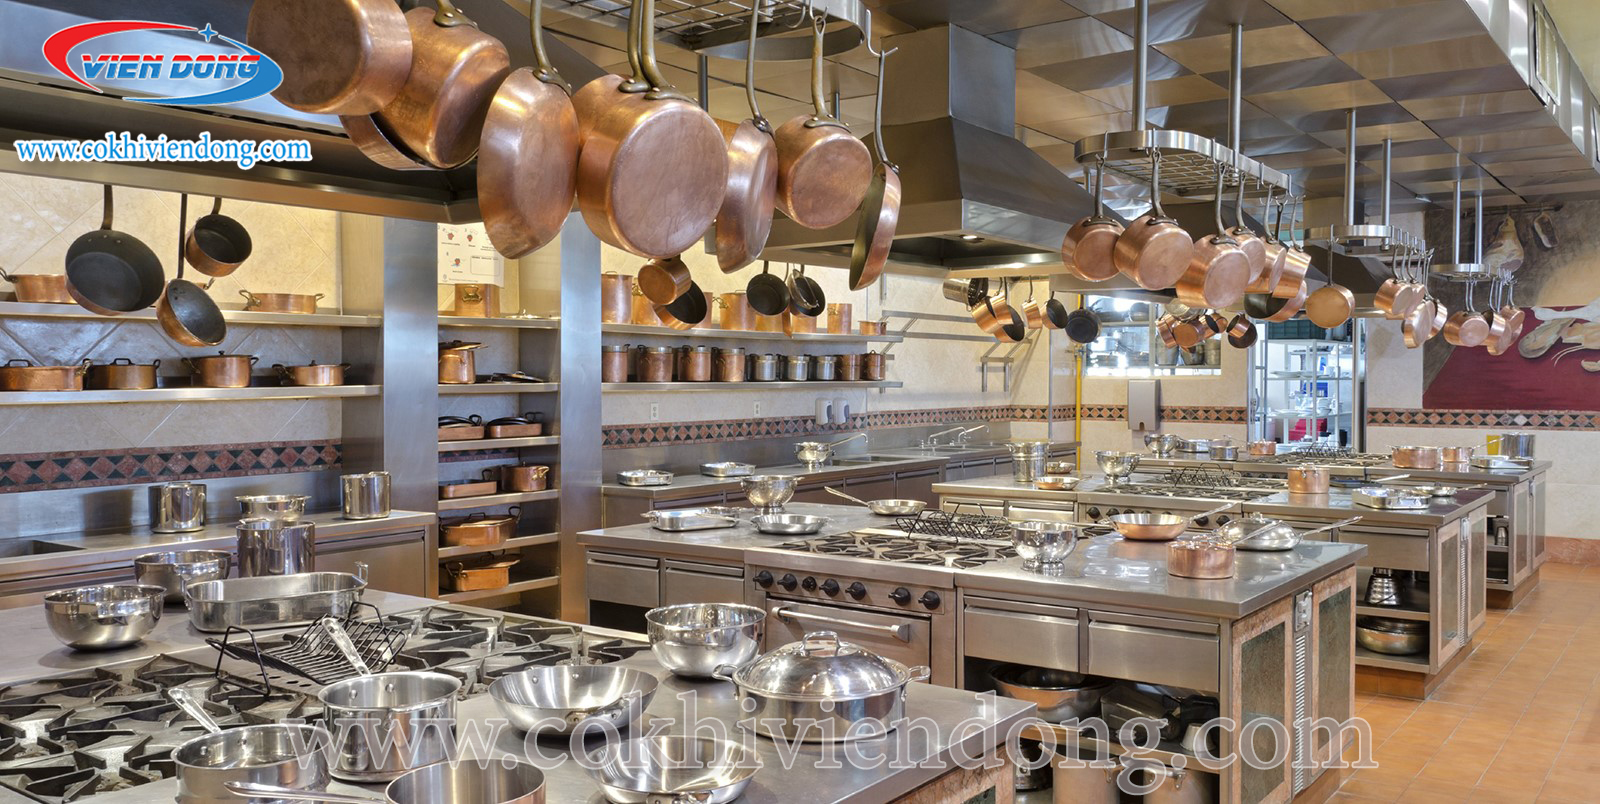 Những hình ảnh về Setup bếp nhà hàng sẽ khiến bạn ngỡ ngàng trước sự thông minh của các thiết bị nướng, rán hiện đại, giúp bạn tiết kiệm được thời gian và công sức trong nấu nướng.